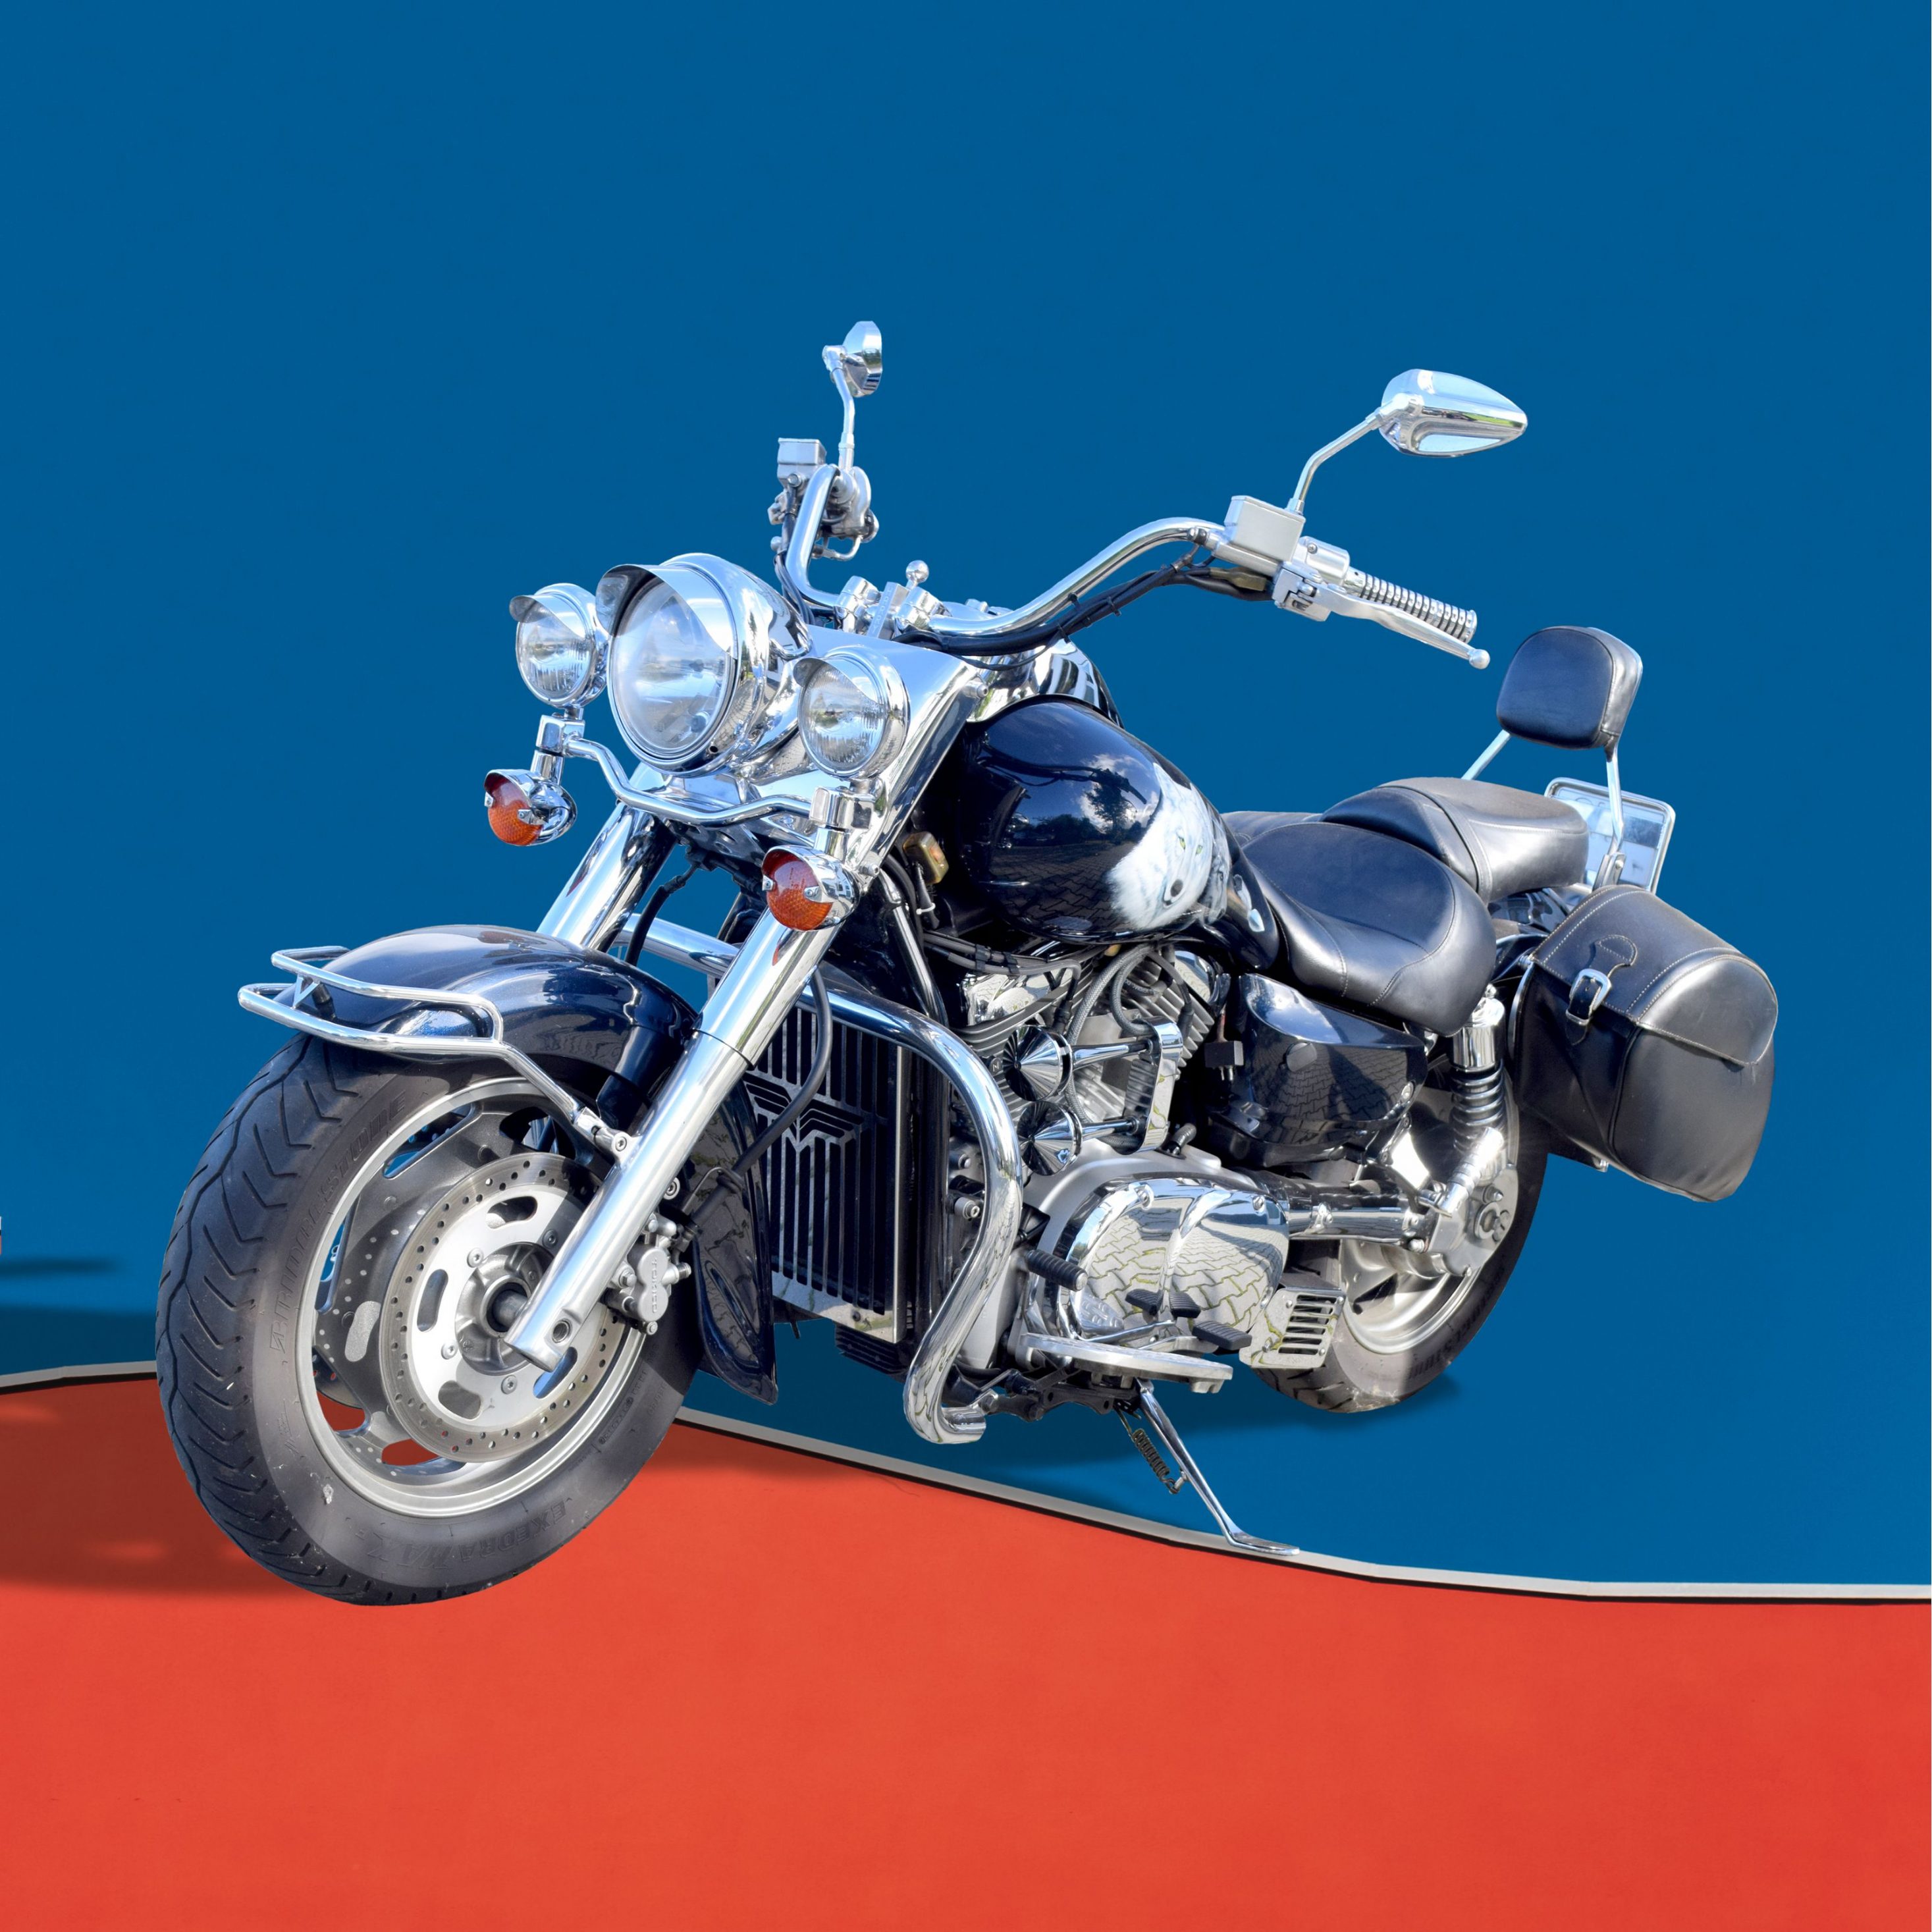 2934x2934 iOS iPad wallpaper 4k Motorbike Blue Dividing Red Ipad Wallpaper 2934x2934 pixels resolution